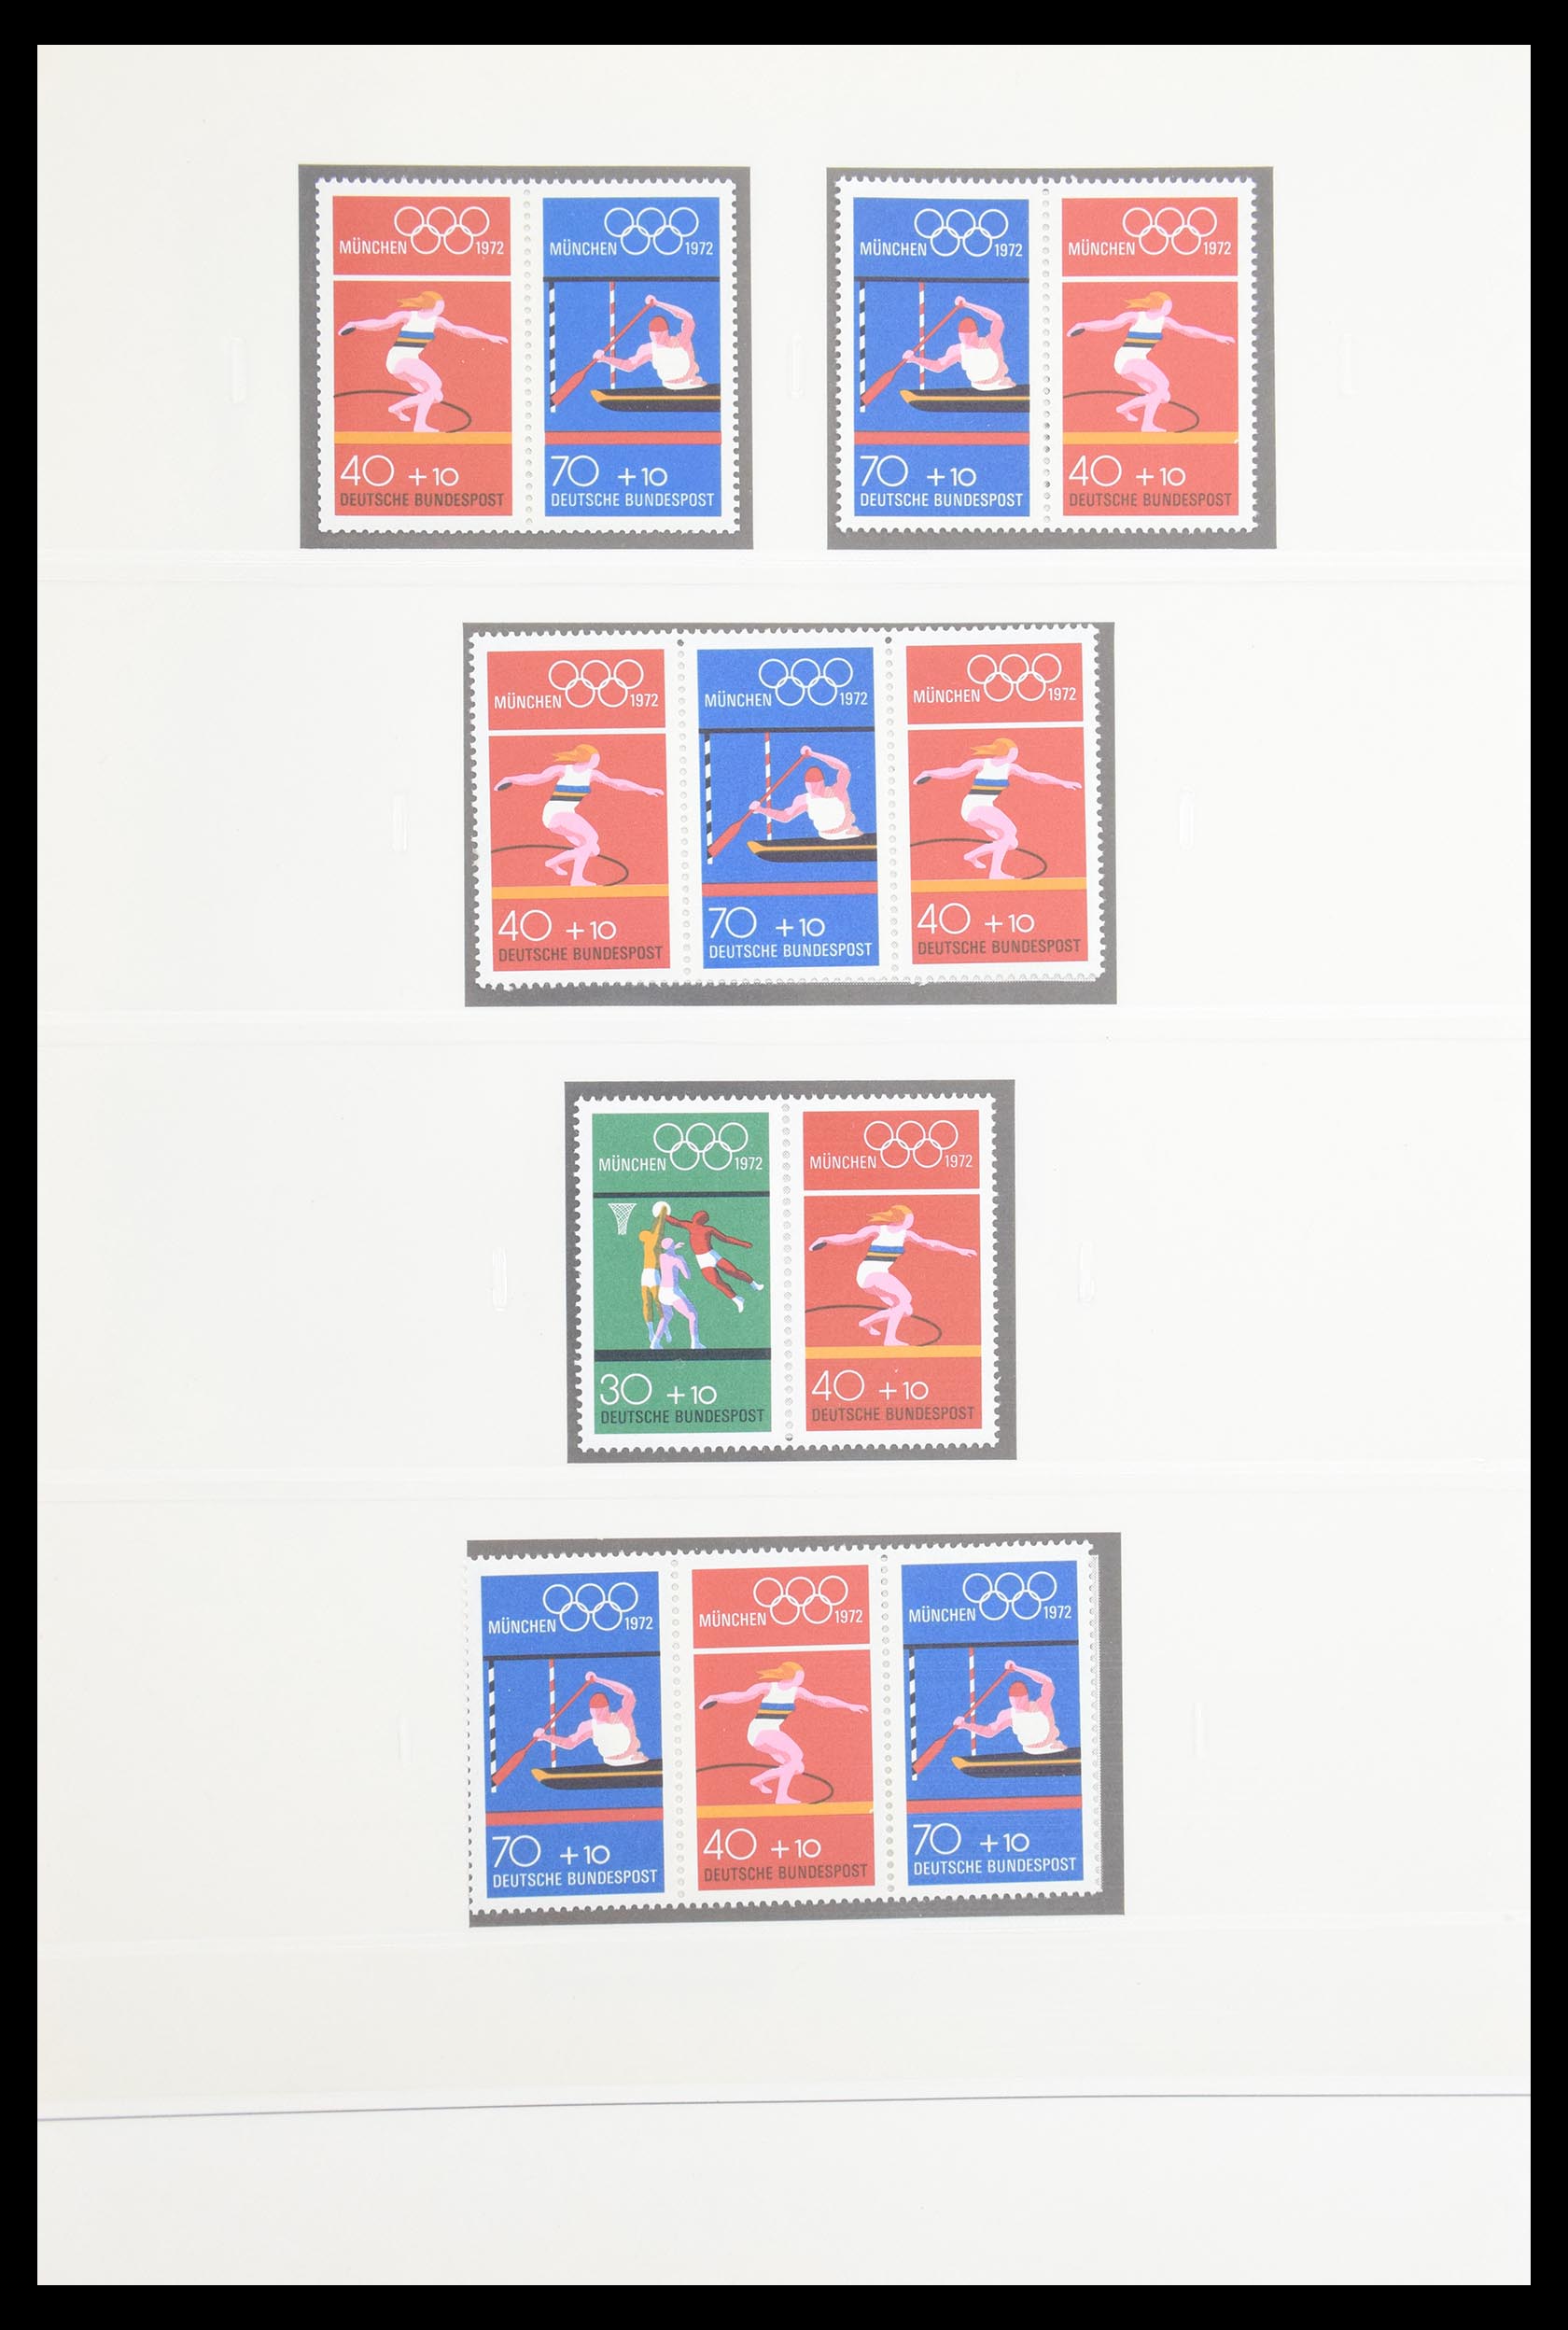 30605 033 - 30605 Bundespost combinaties 1951-1974.